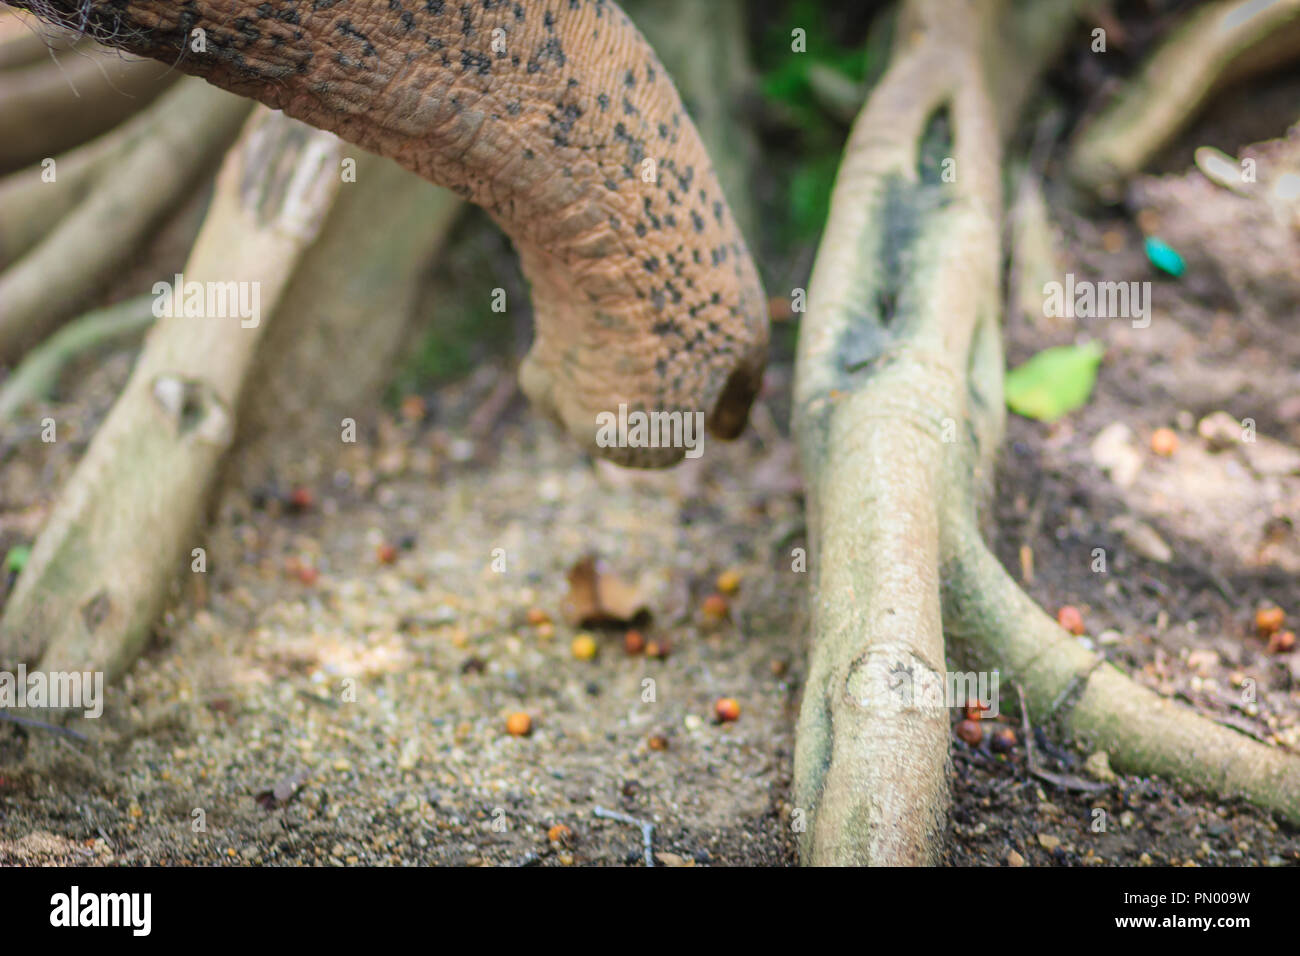 Albino Elefanten Nase Schnuffelnd Um Und Auf Der Suche Nach Nahrung Auf Staubigen Boden Wurzel Baum Stockfotografie Alamy